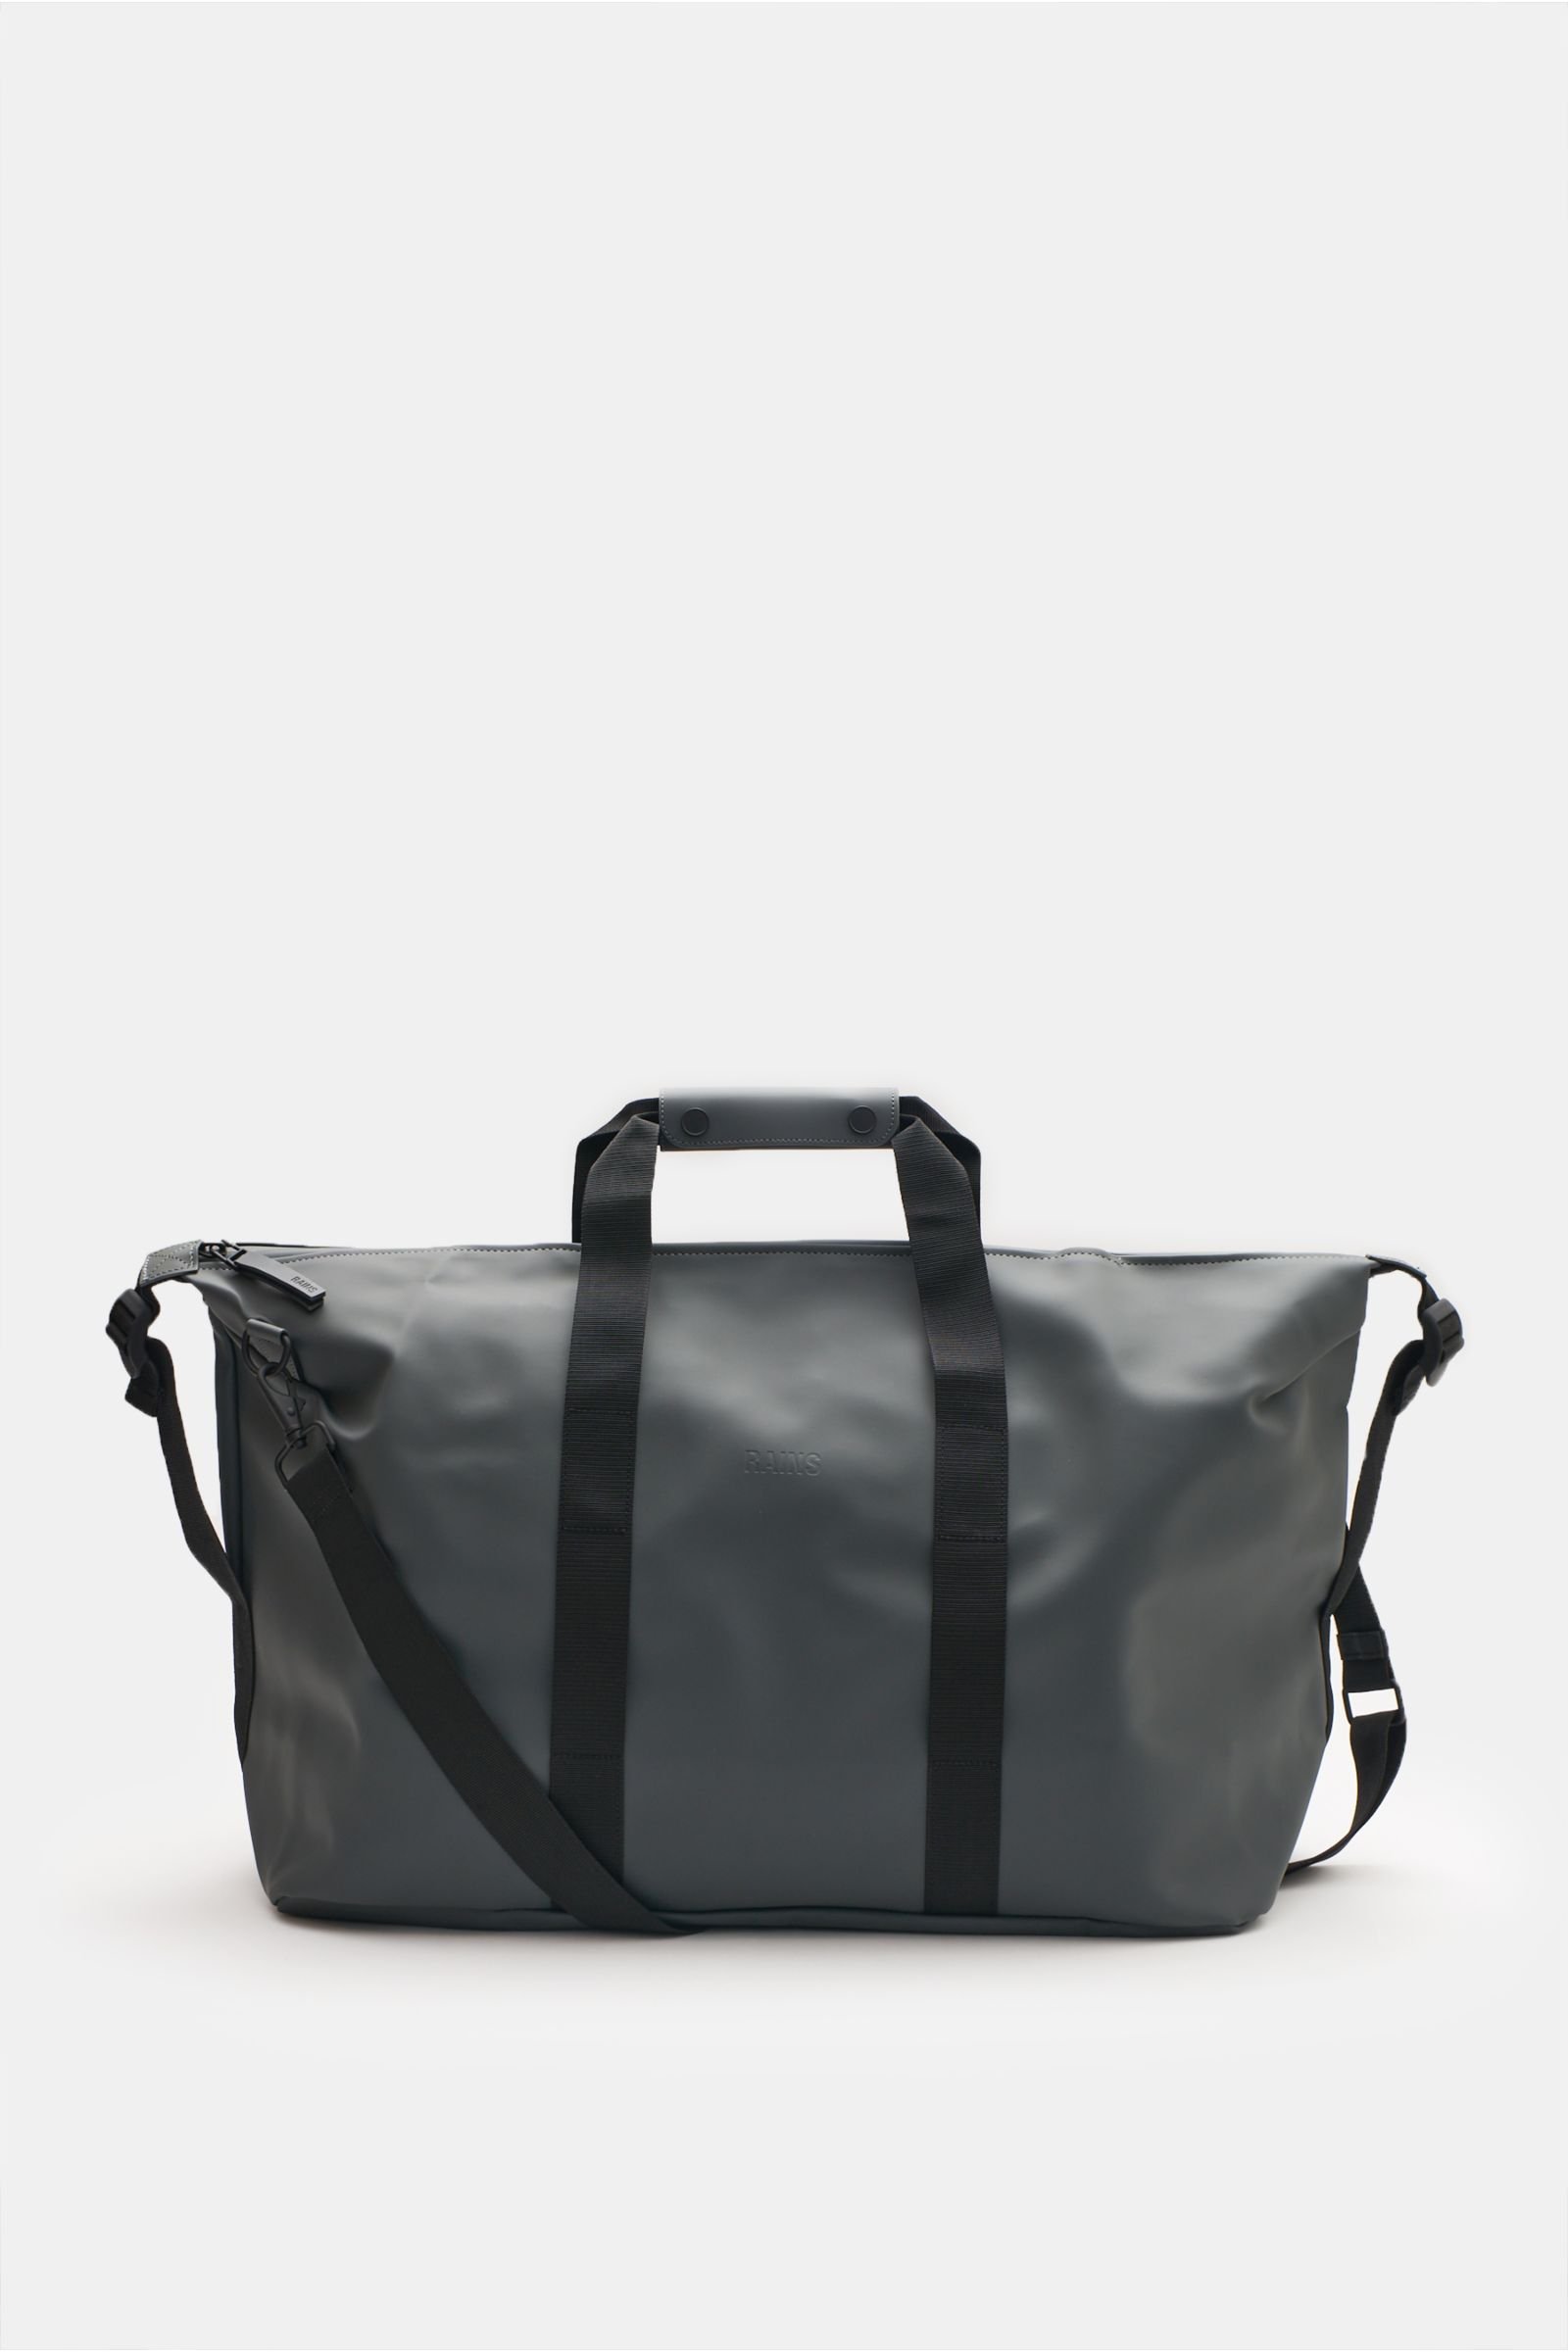 Travel bag 'Weekend Bag' dark grey